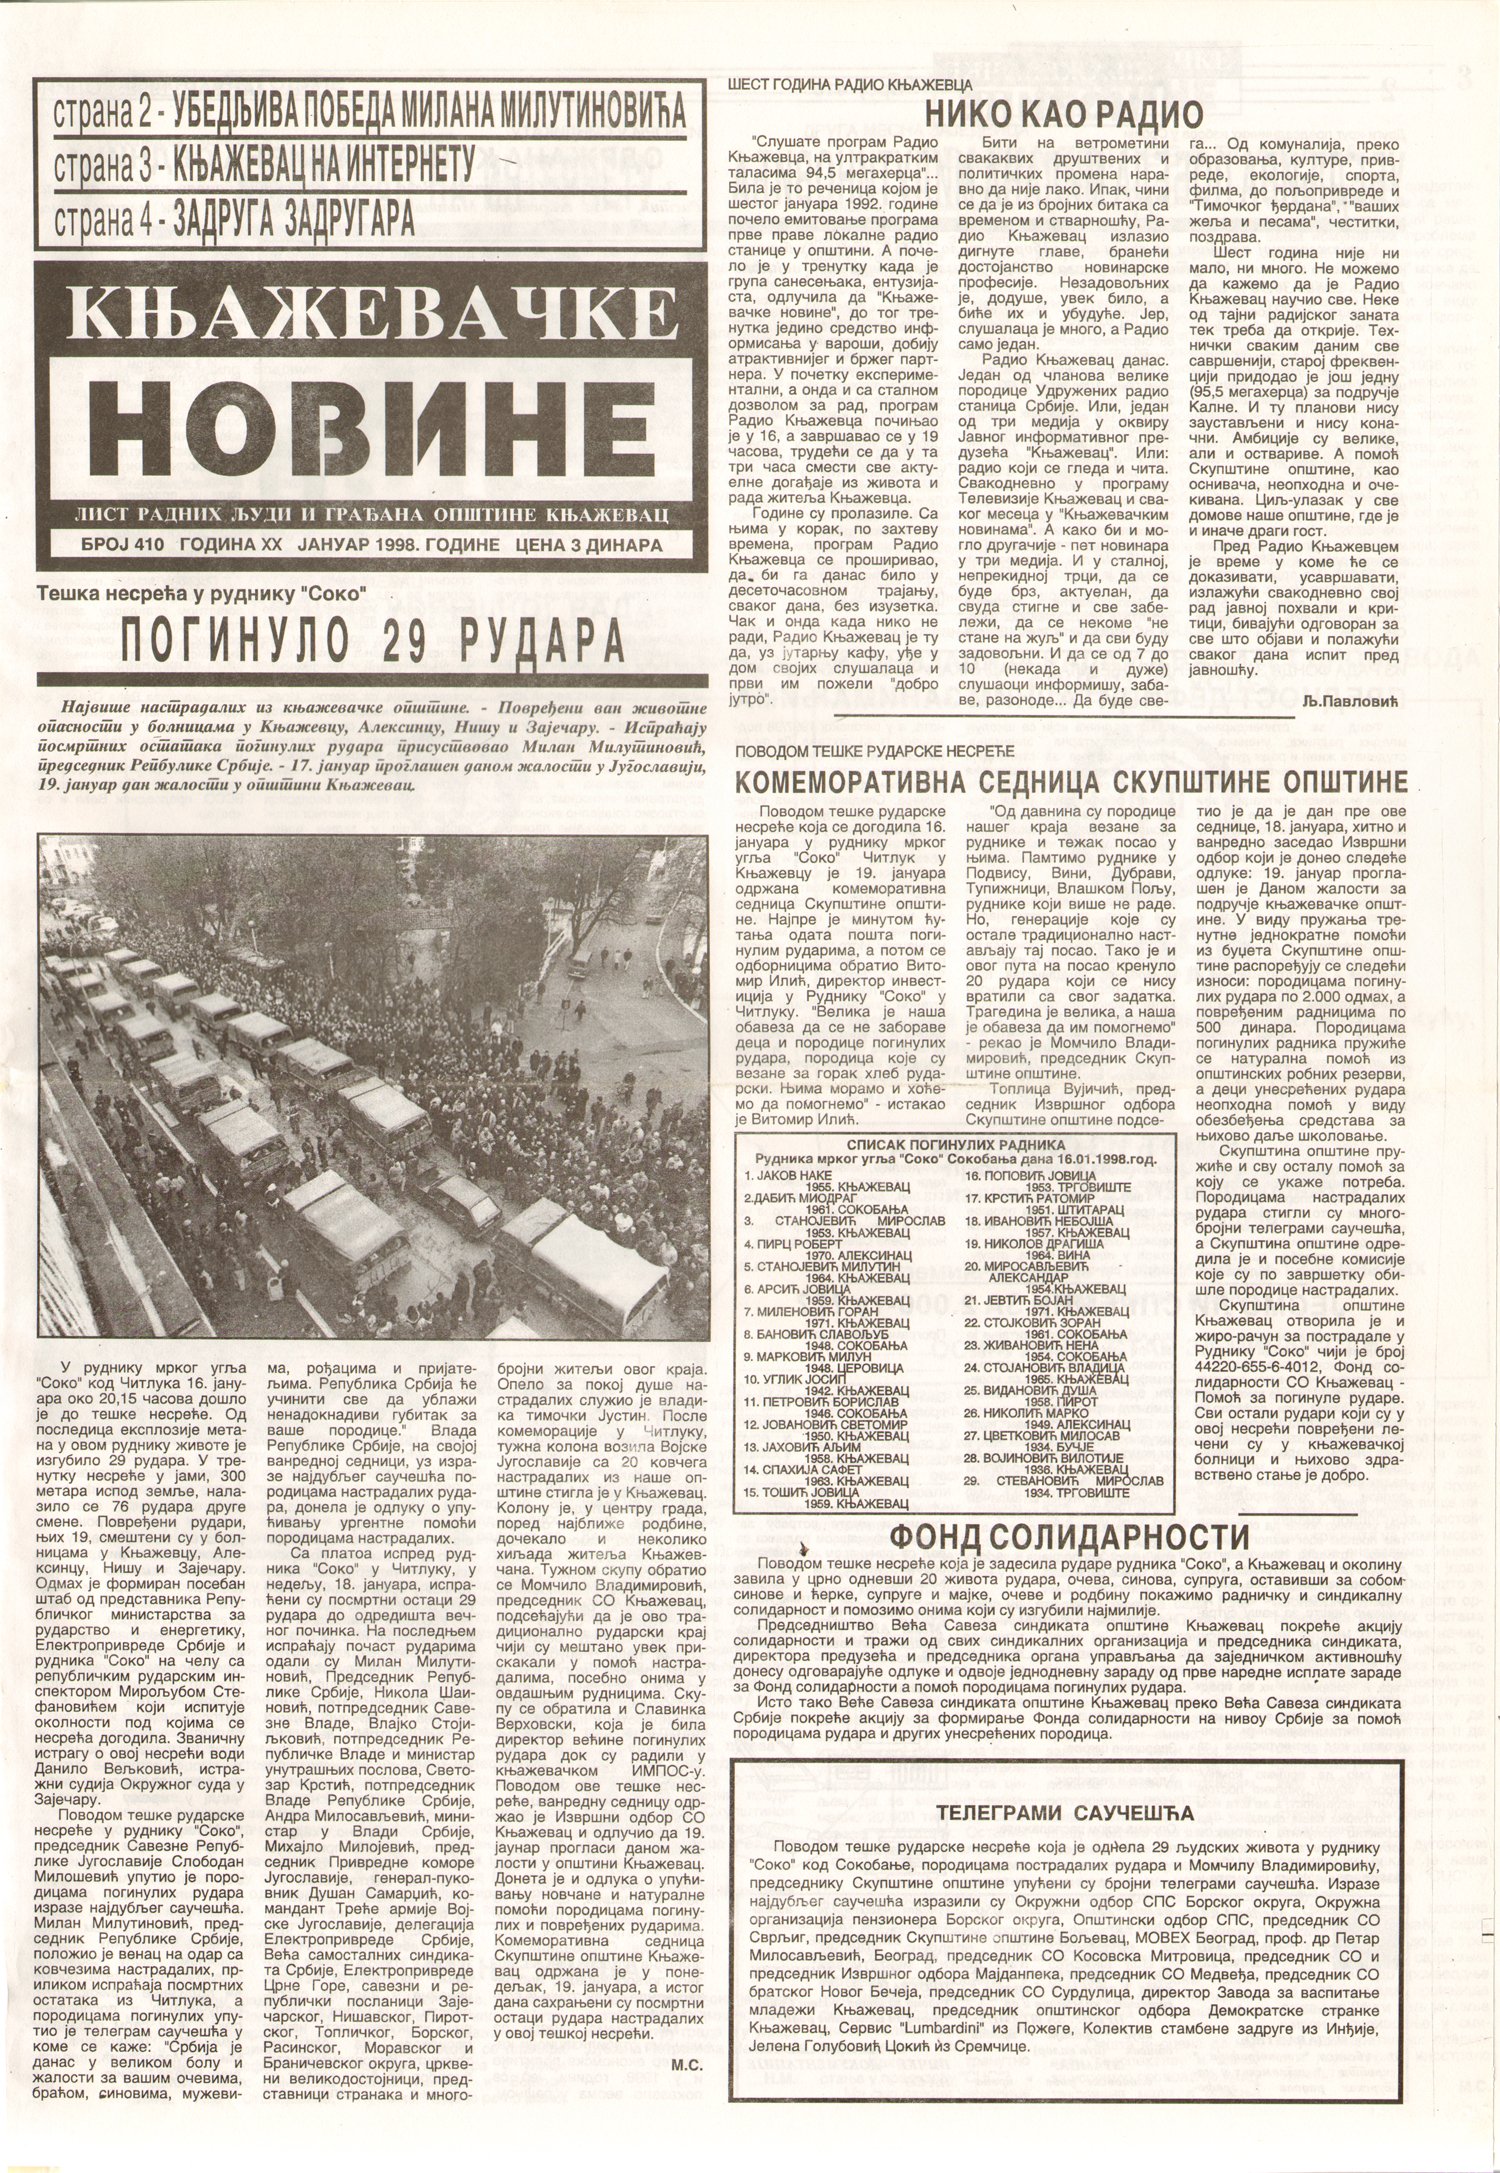 Књажевачке новине, број 410, година 1998